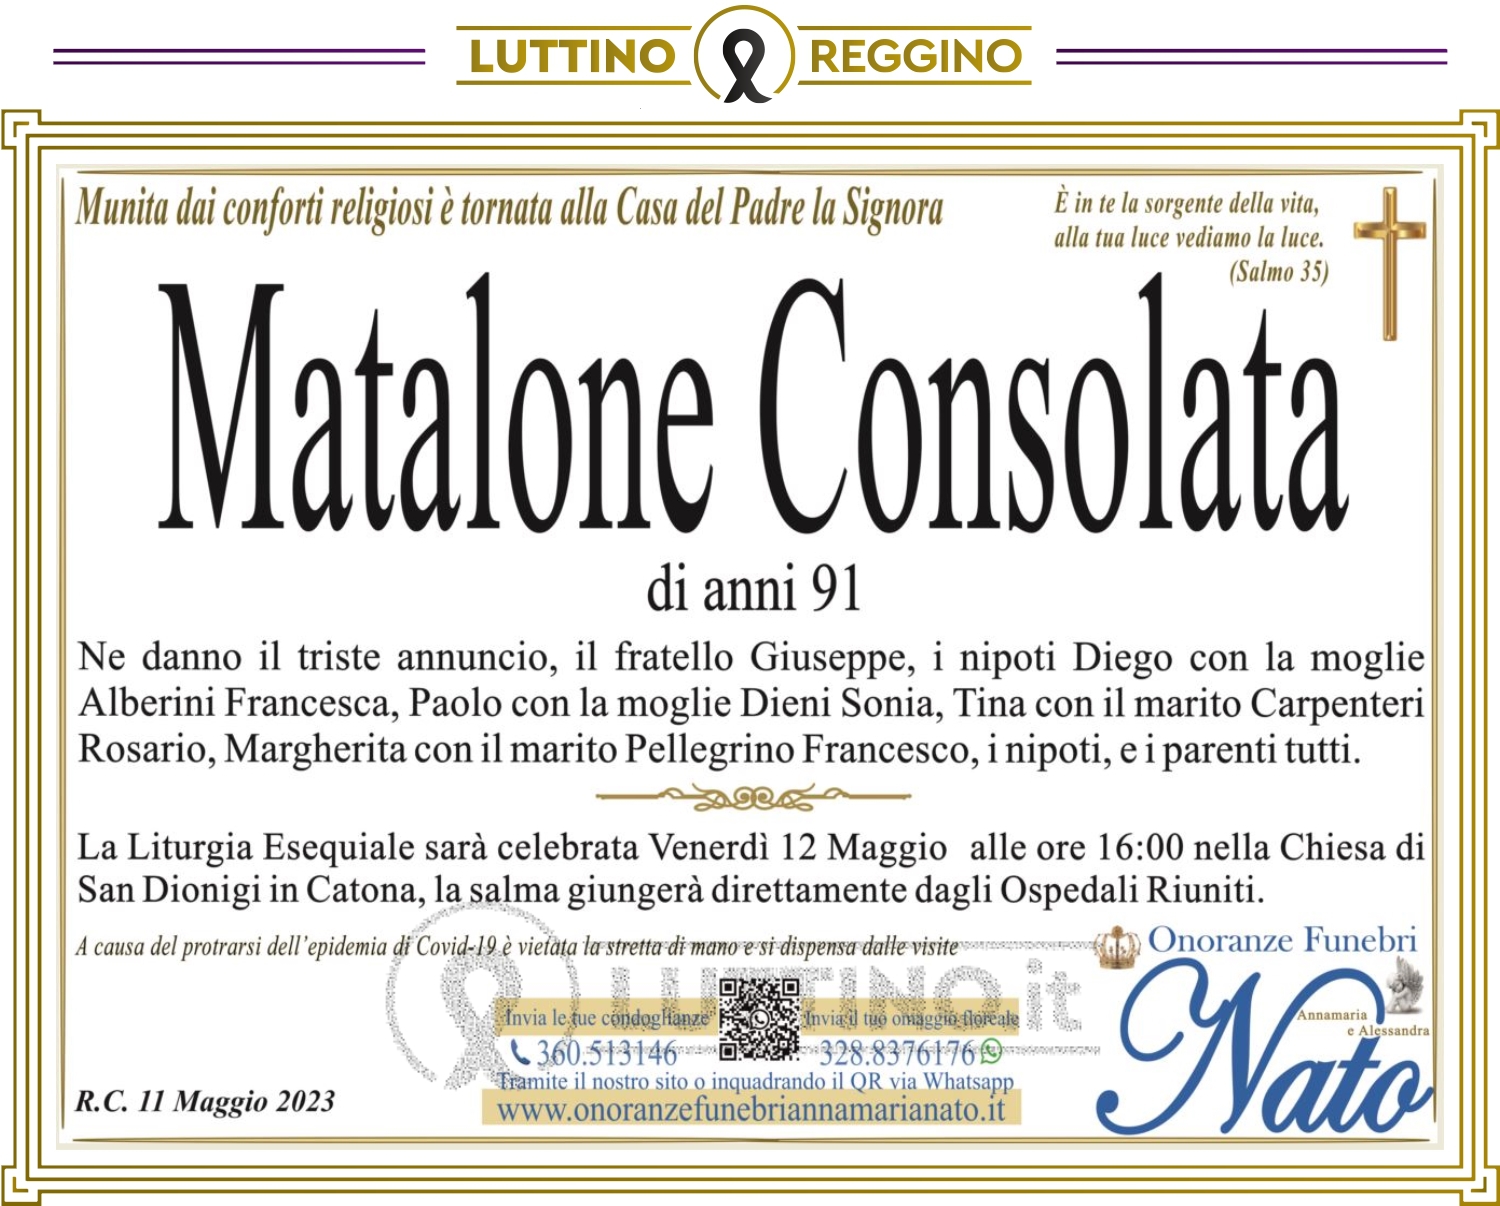 Consolata Matalone